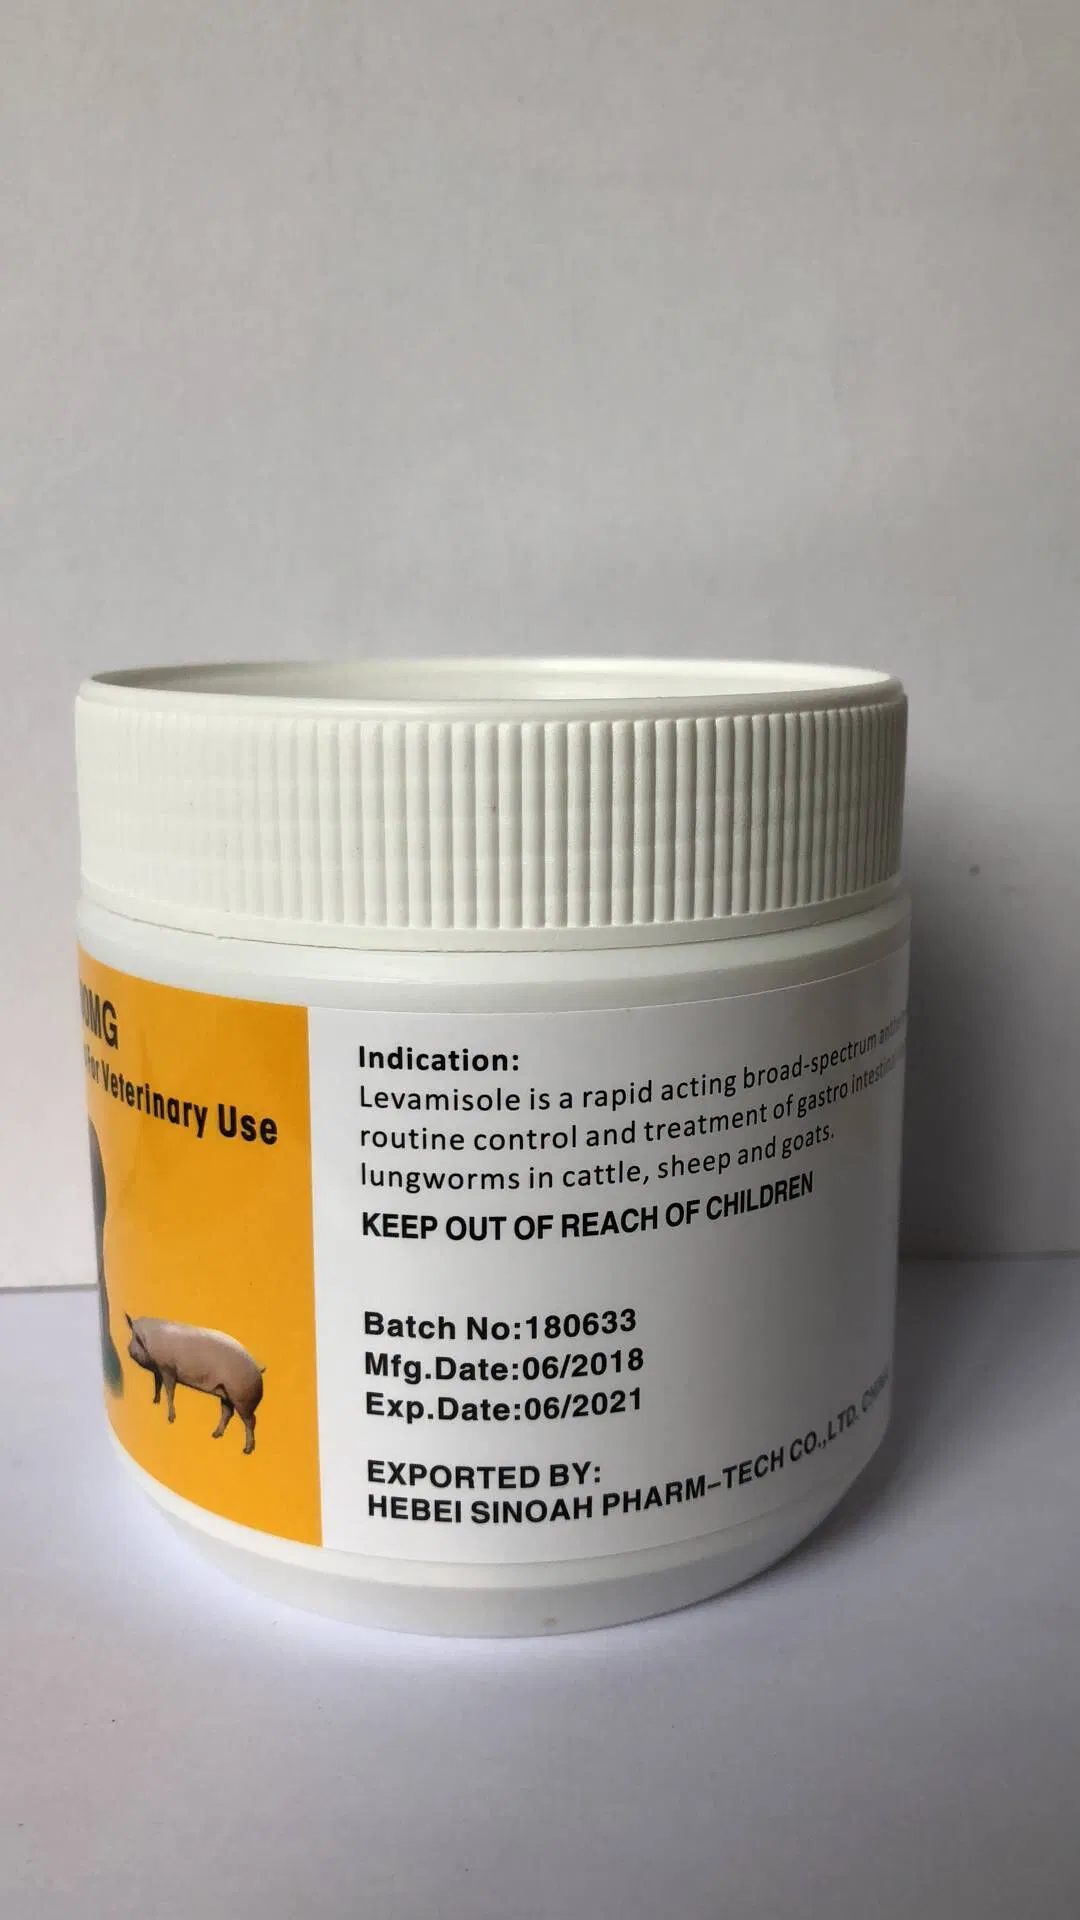 Los medicamentos veterinarios Sorbitol Solución Oral para uso veterinario sólo